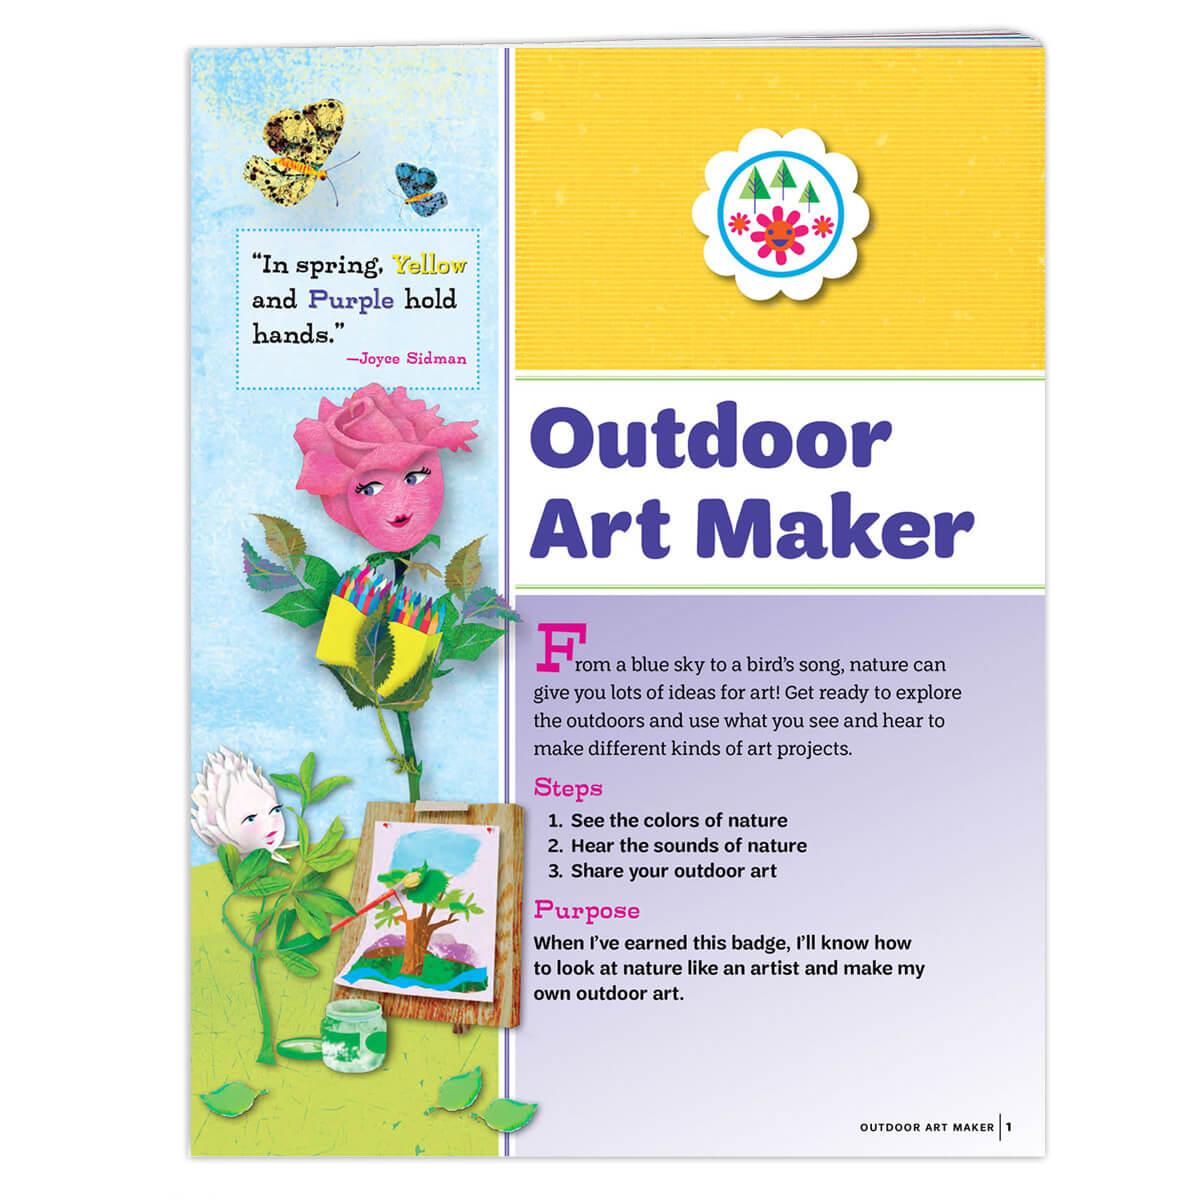 Outdoor Art Maker Badge Requirements